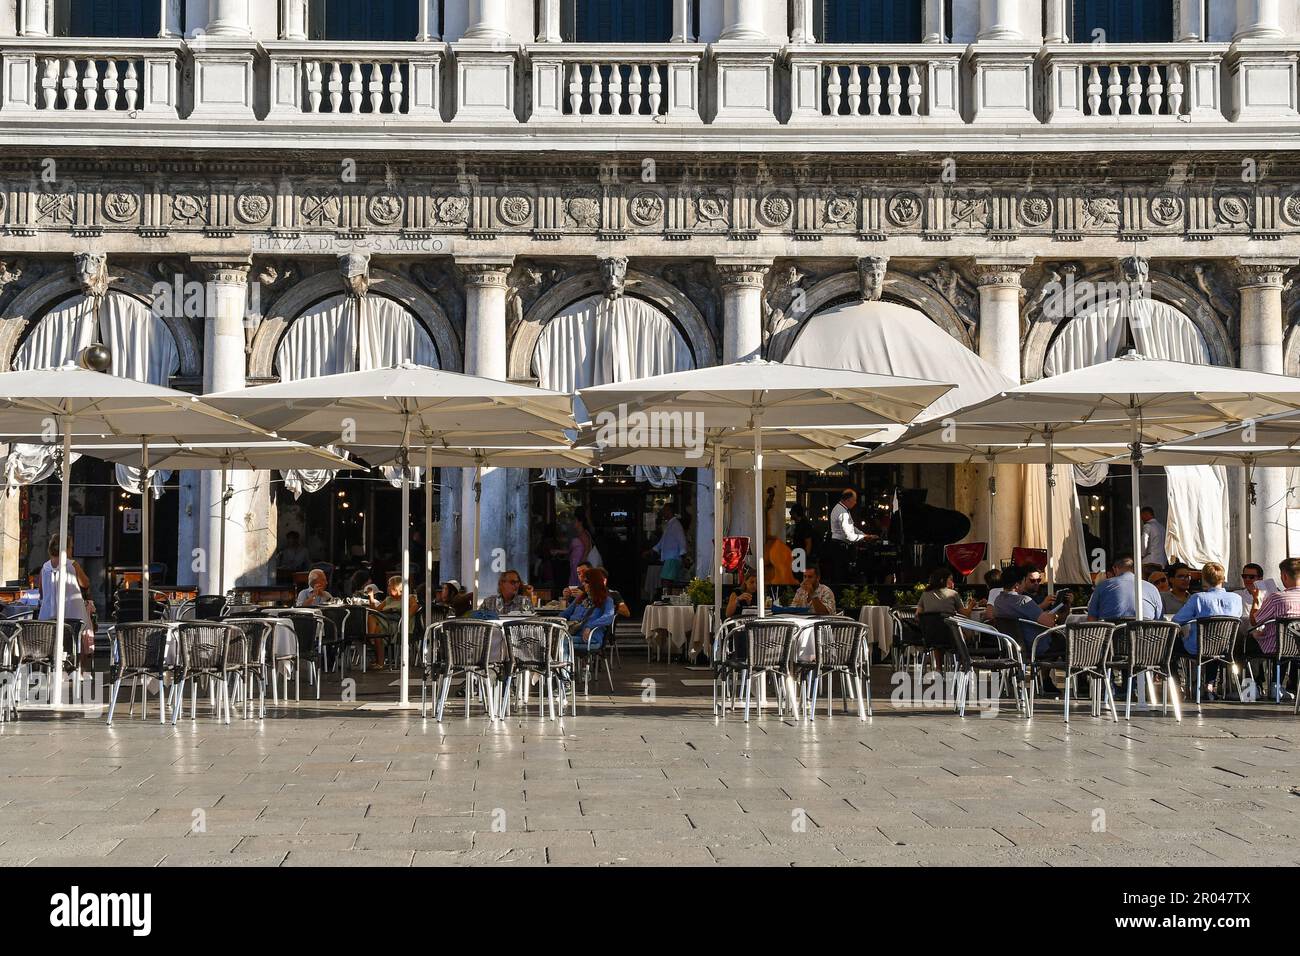 Extérieur du célèbre Caffè Florian, établi en 1720 sur la place Saint-Marc, l'un des plus anciens cafés du monde, Venise, Vénétie, Italie Banque D'Images